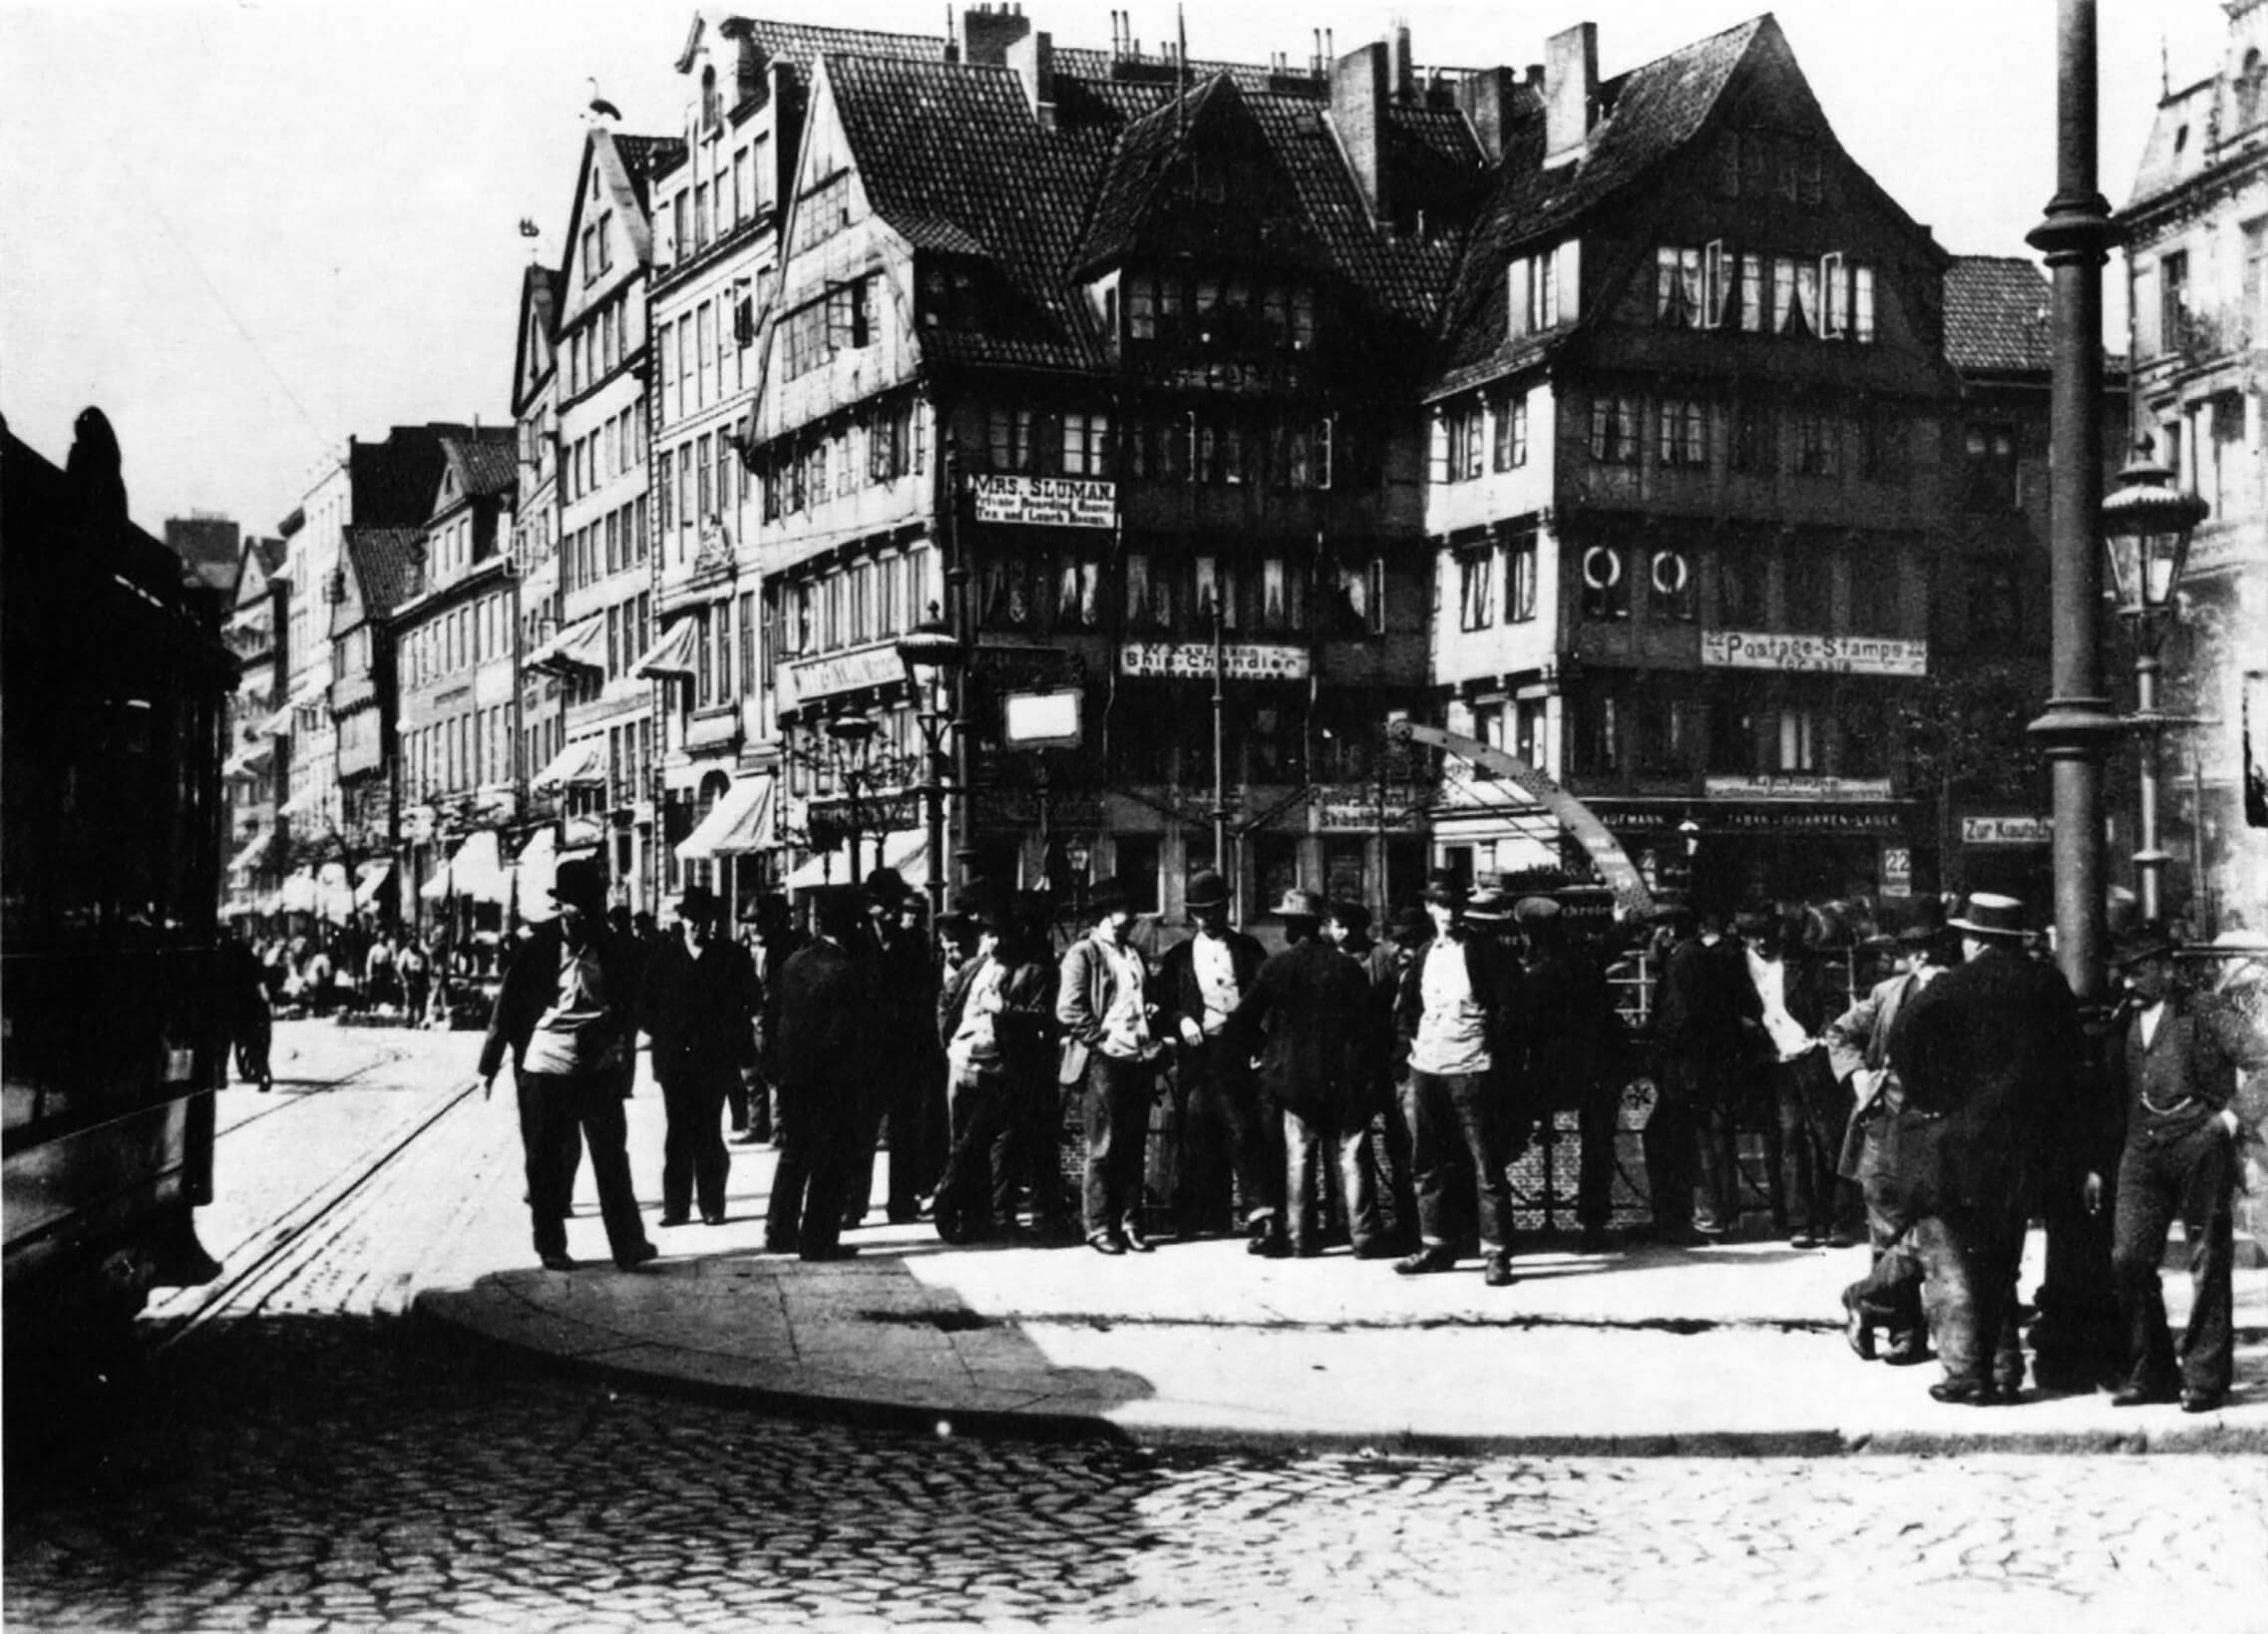 Des ouvriers attendent d’être embauchés près du port de Hambourg, en 1899 (Johann Hamann).